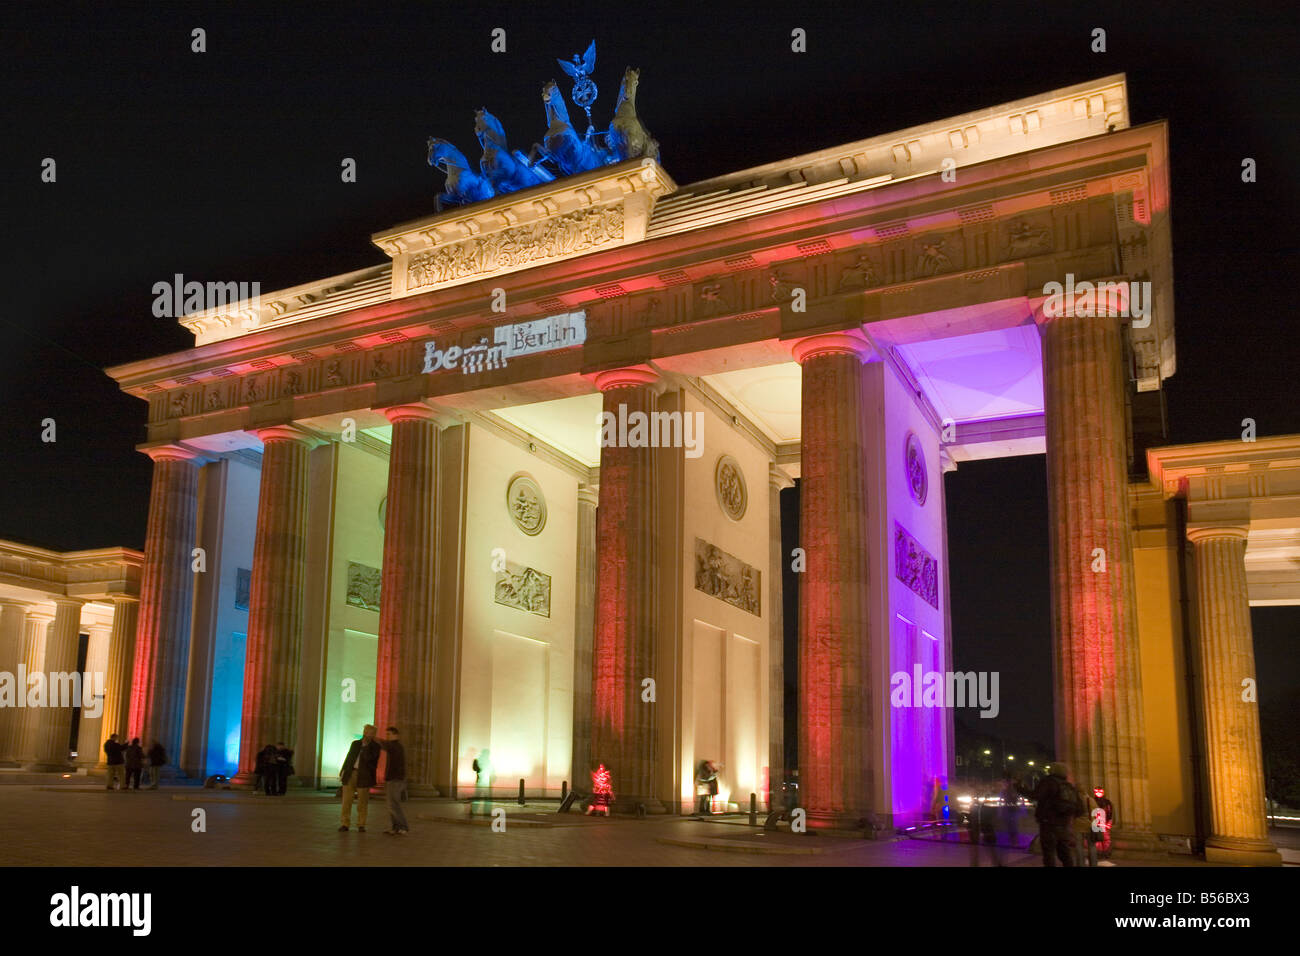 La Porta di Brandeburgo, Berlino, Germania, la festa delle luci 2008 - Brandenburger Tor Foto Stock